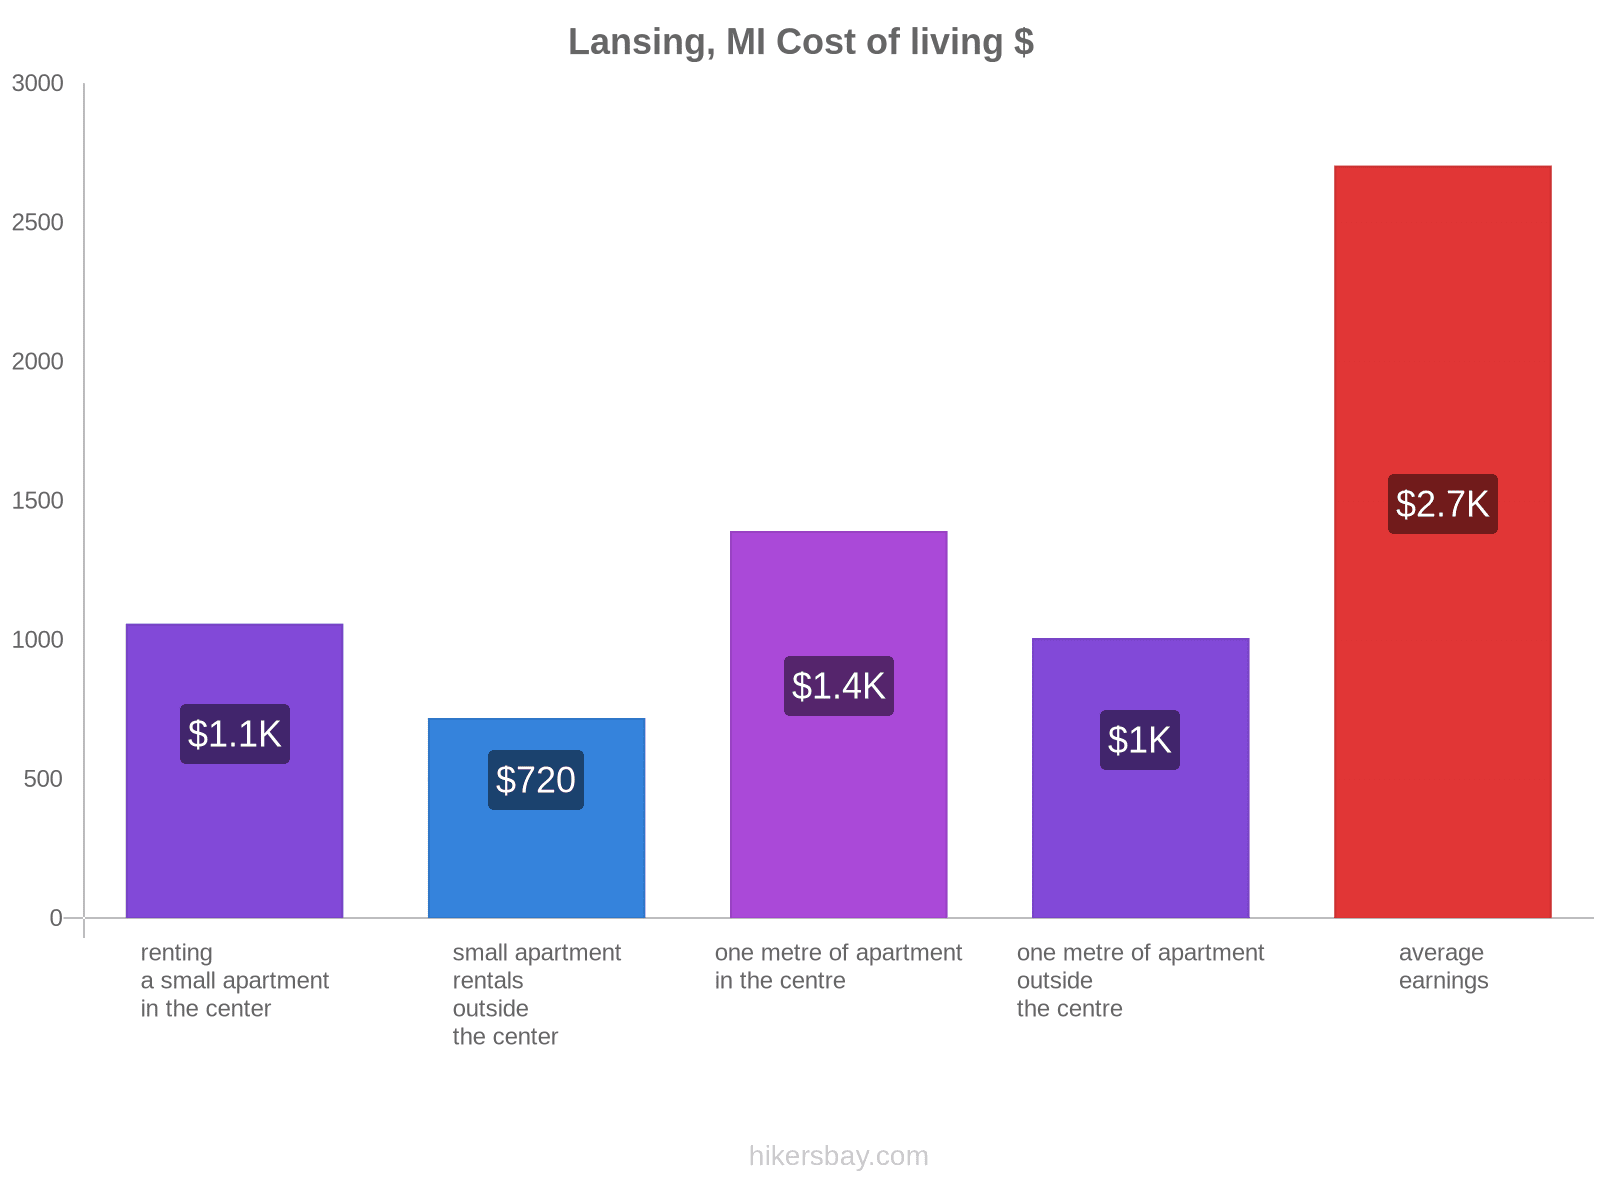 Lansing, MI cost of living hikersbay.com